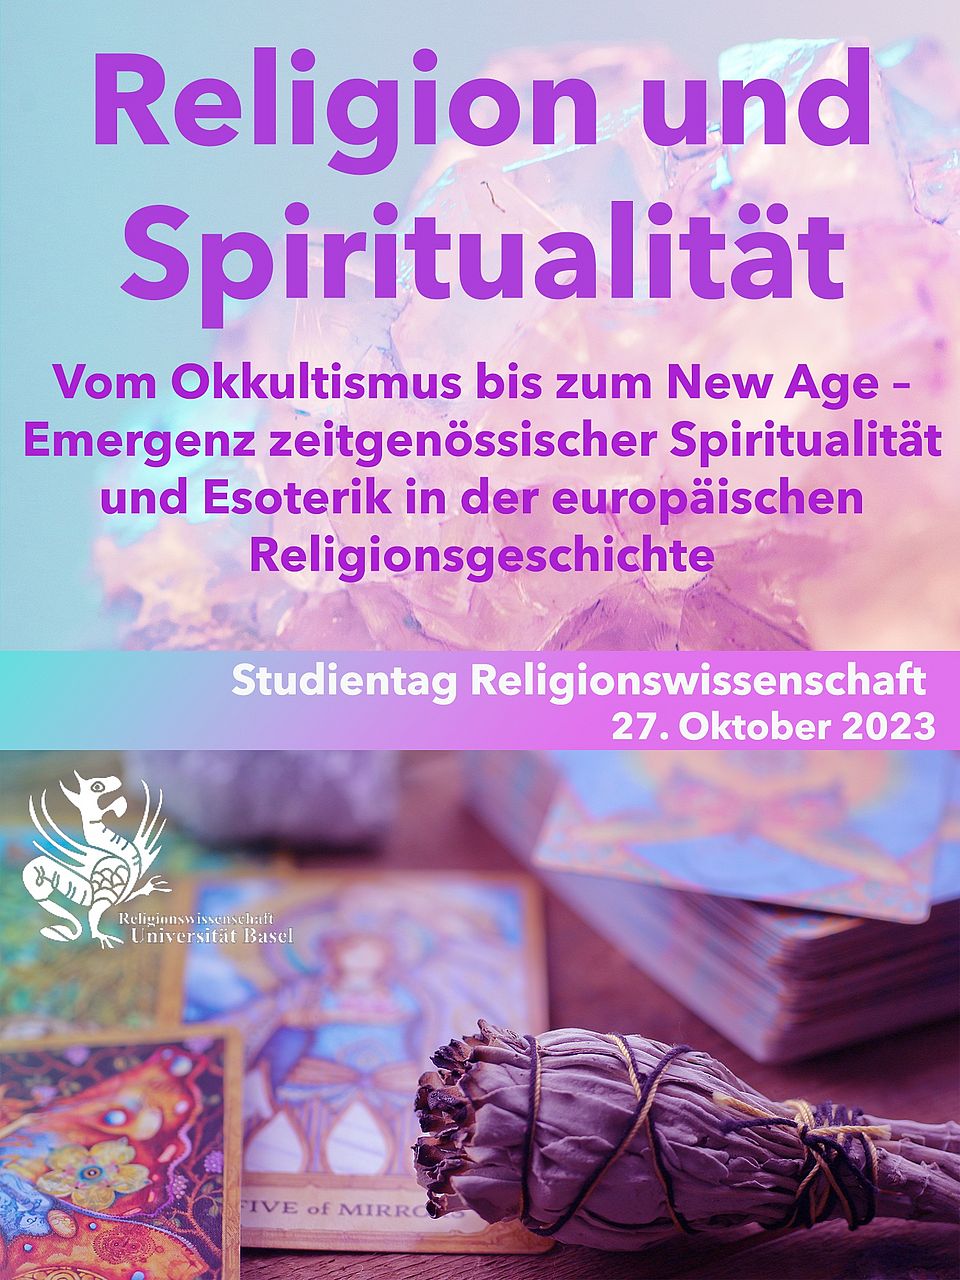 Flyer für den Studientag HS23: in violett und türkis Farbtönen, oben ein Bild von einem Kristall, in der unteren Hälfte Räcuherwerk und Tarotkarten in Nahaufnahme. Der Titel der Veranstaltung ist "Religion und Spiritualität", in weiss das Logo der Religionswissenschaft Basel (ein Basilisk).